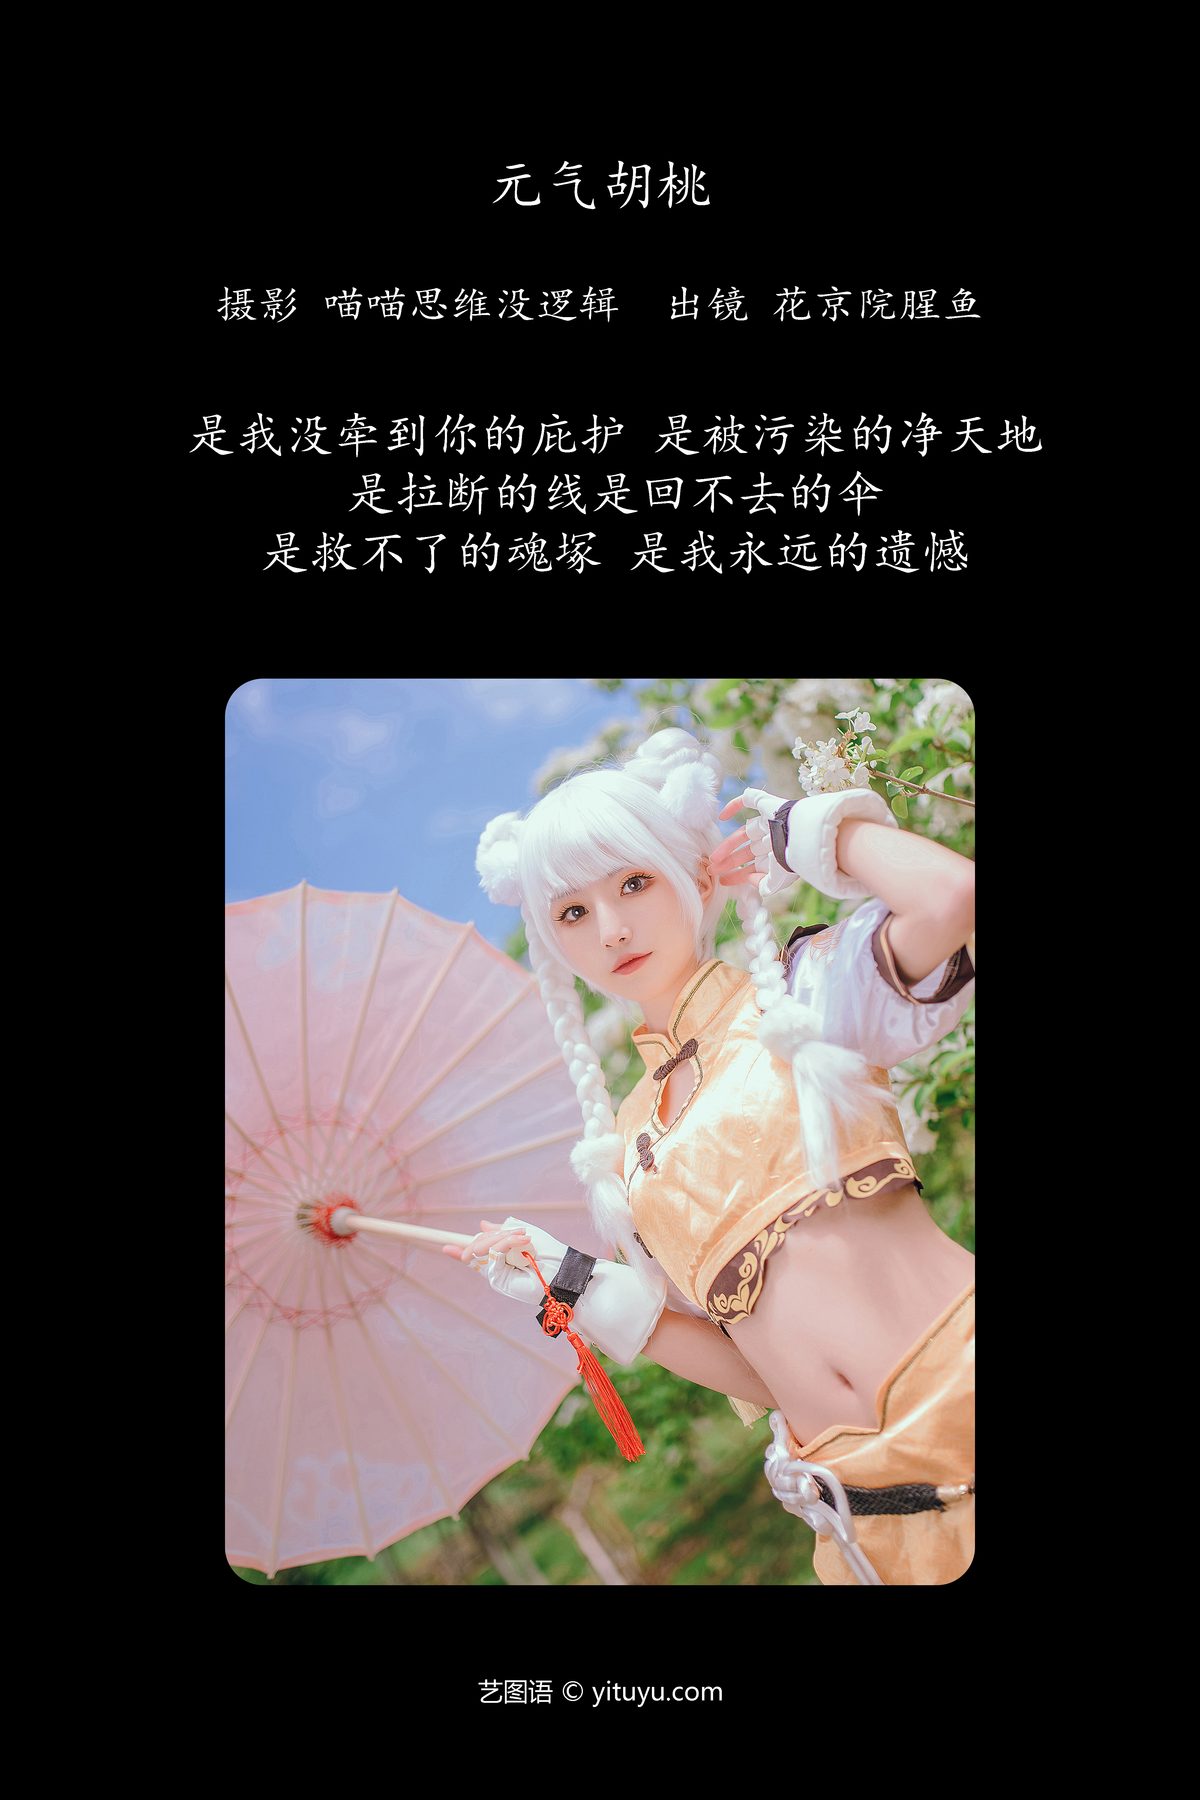 YiTuYu艺图语 Vol 5755 Hua Jing Yuan Xing Yu 0002 5114086867.jpg